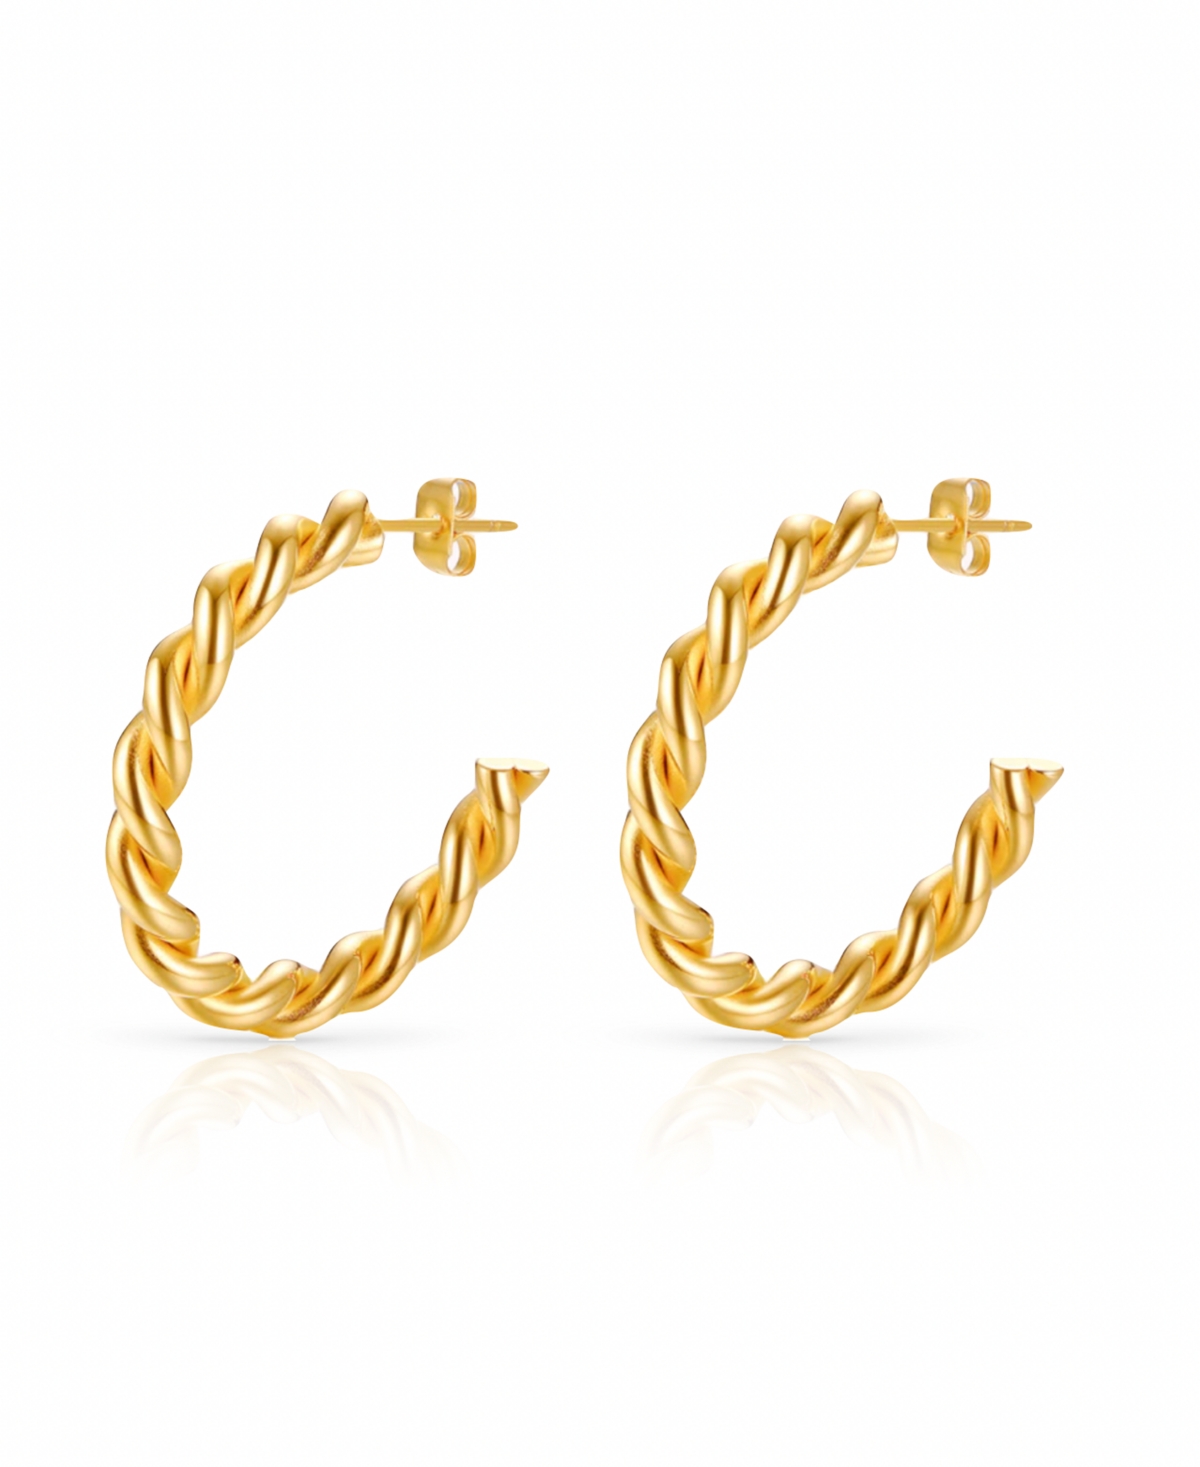 Anti-Tarnish Twist Open Hoop Earrings - Gold Plated